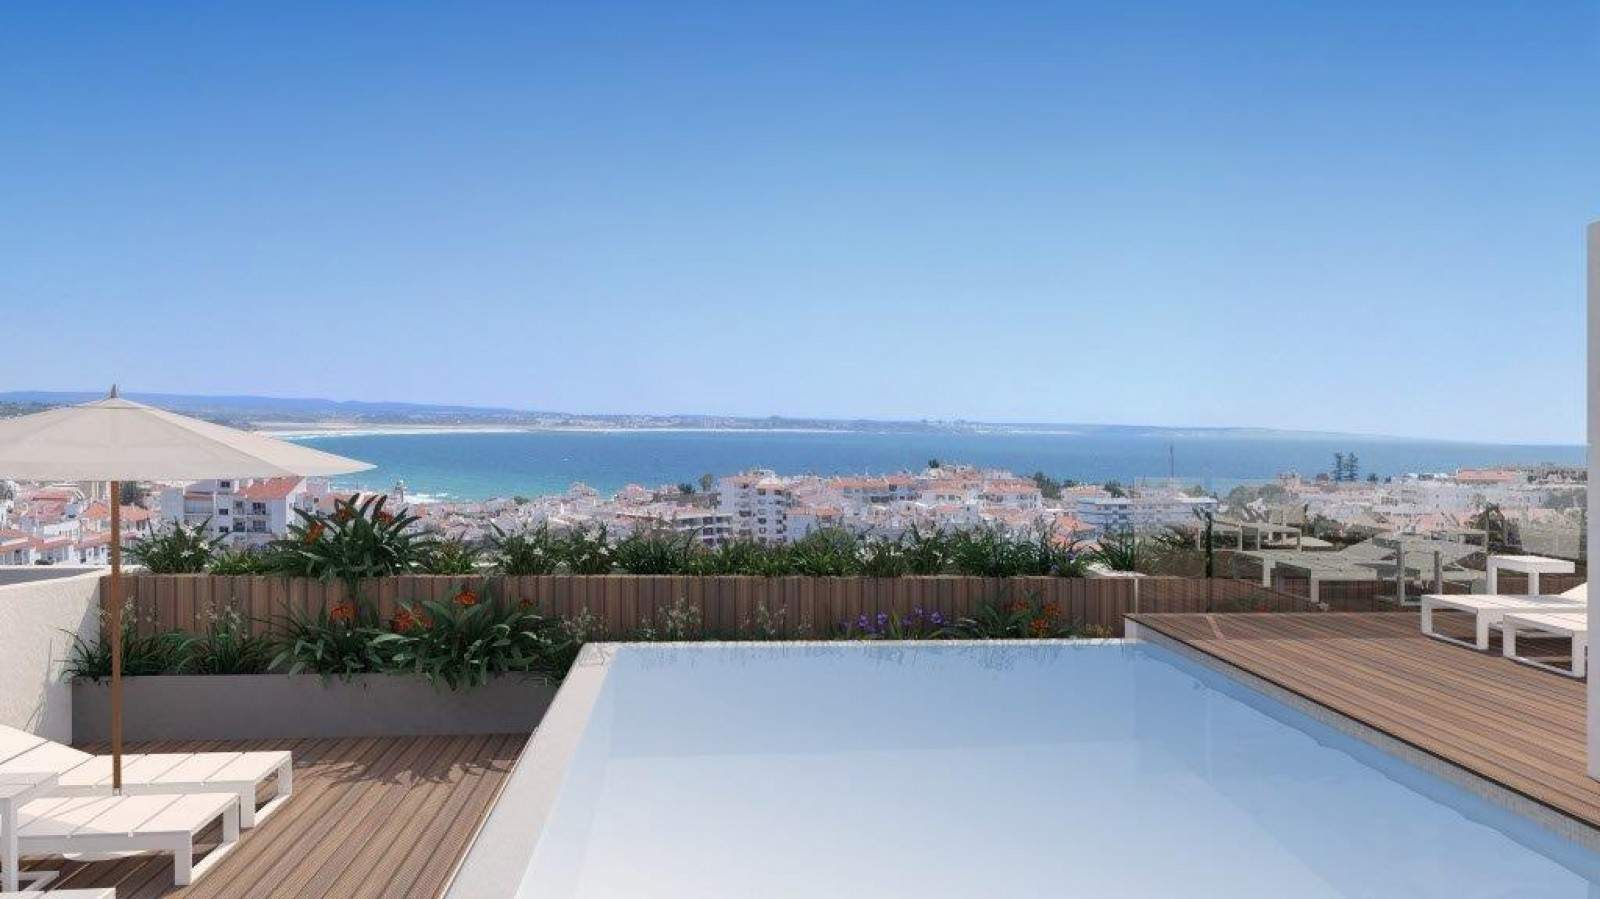 Venta de ático nuevo, piscina y vistas al mar, Lagos, Algarve,Portugal_208266